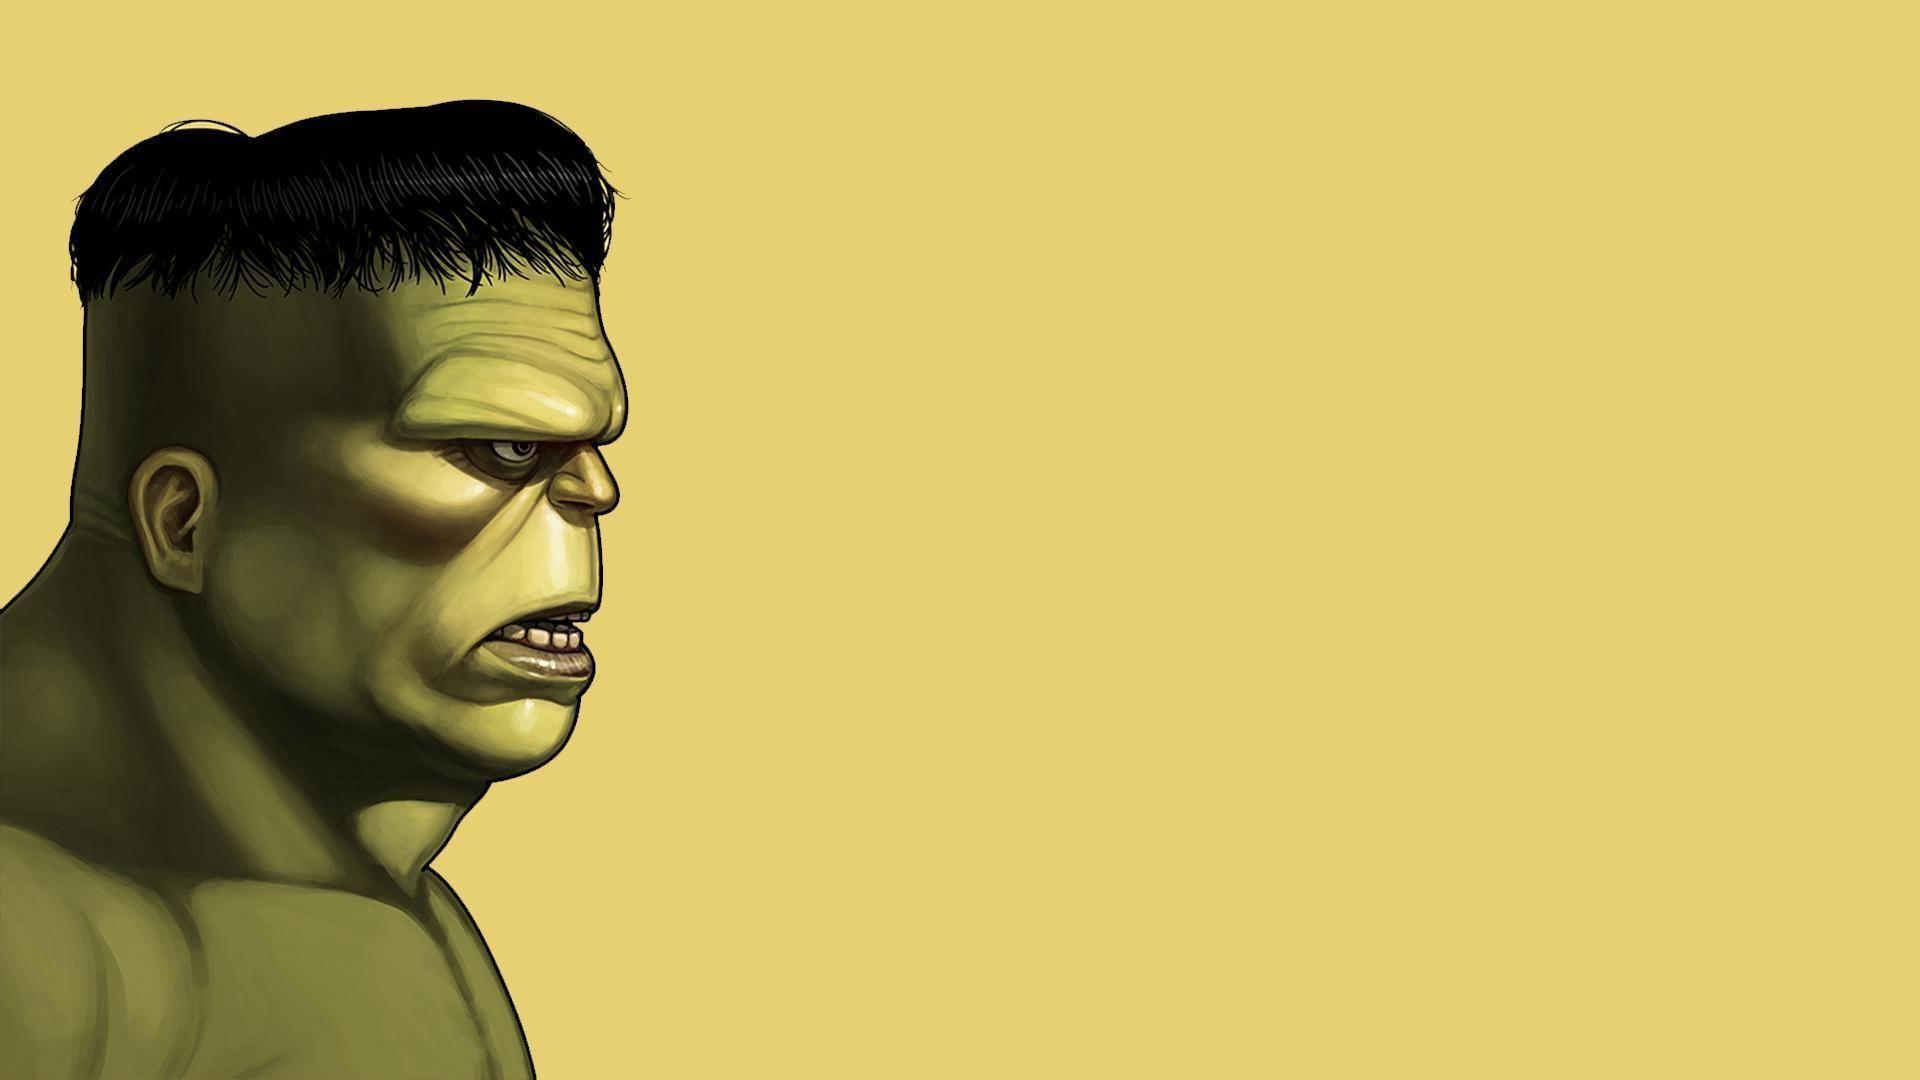 Hulk profile HD desktop wallpaper, Widescreen, High Definition